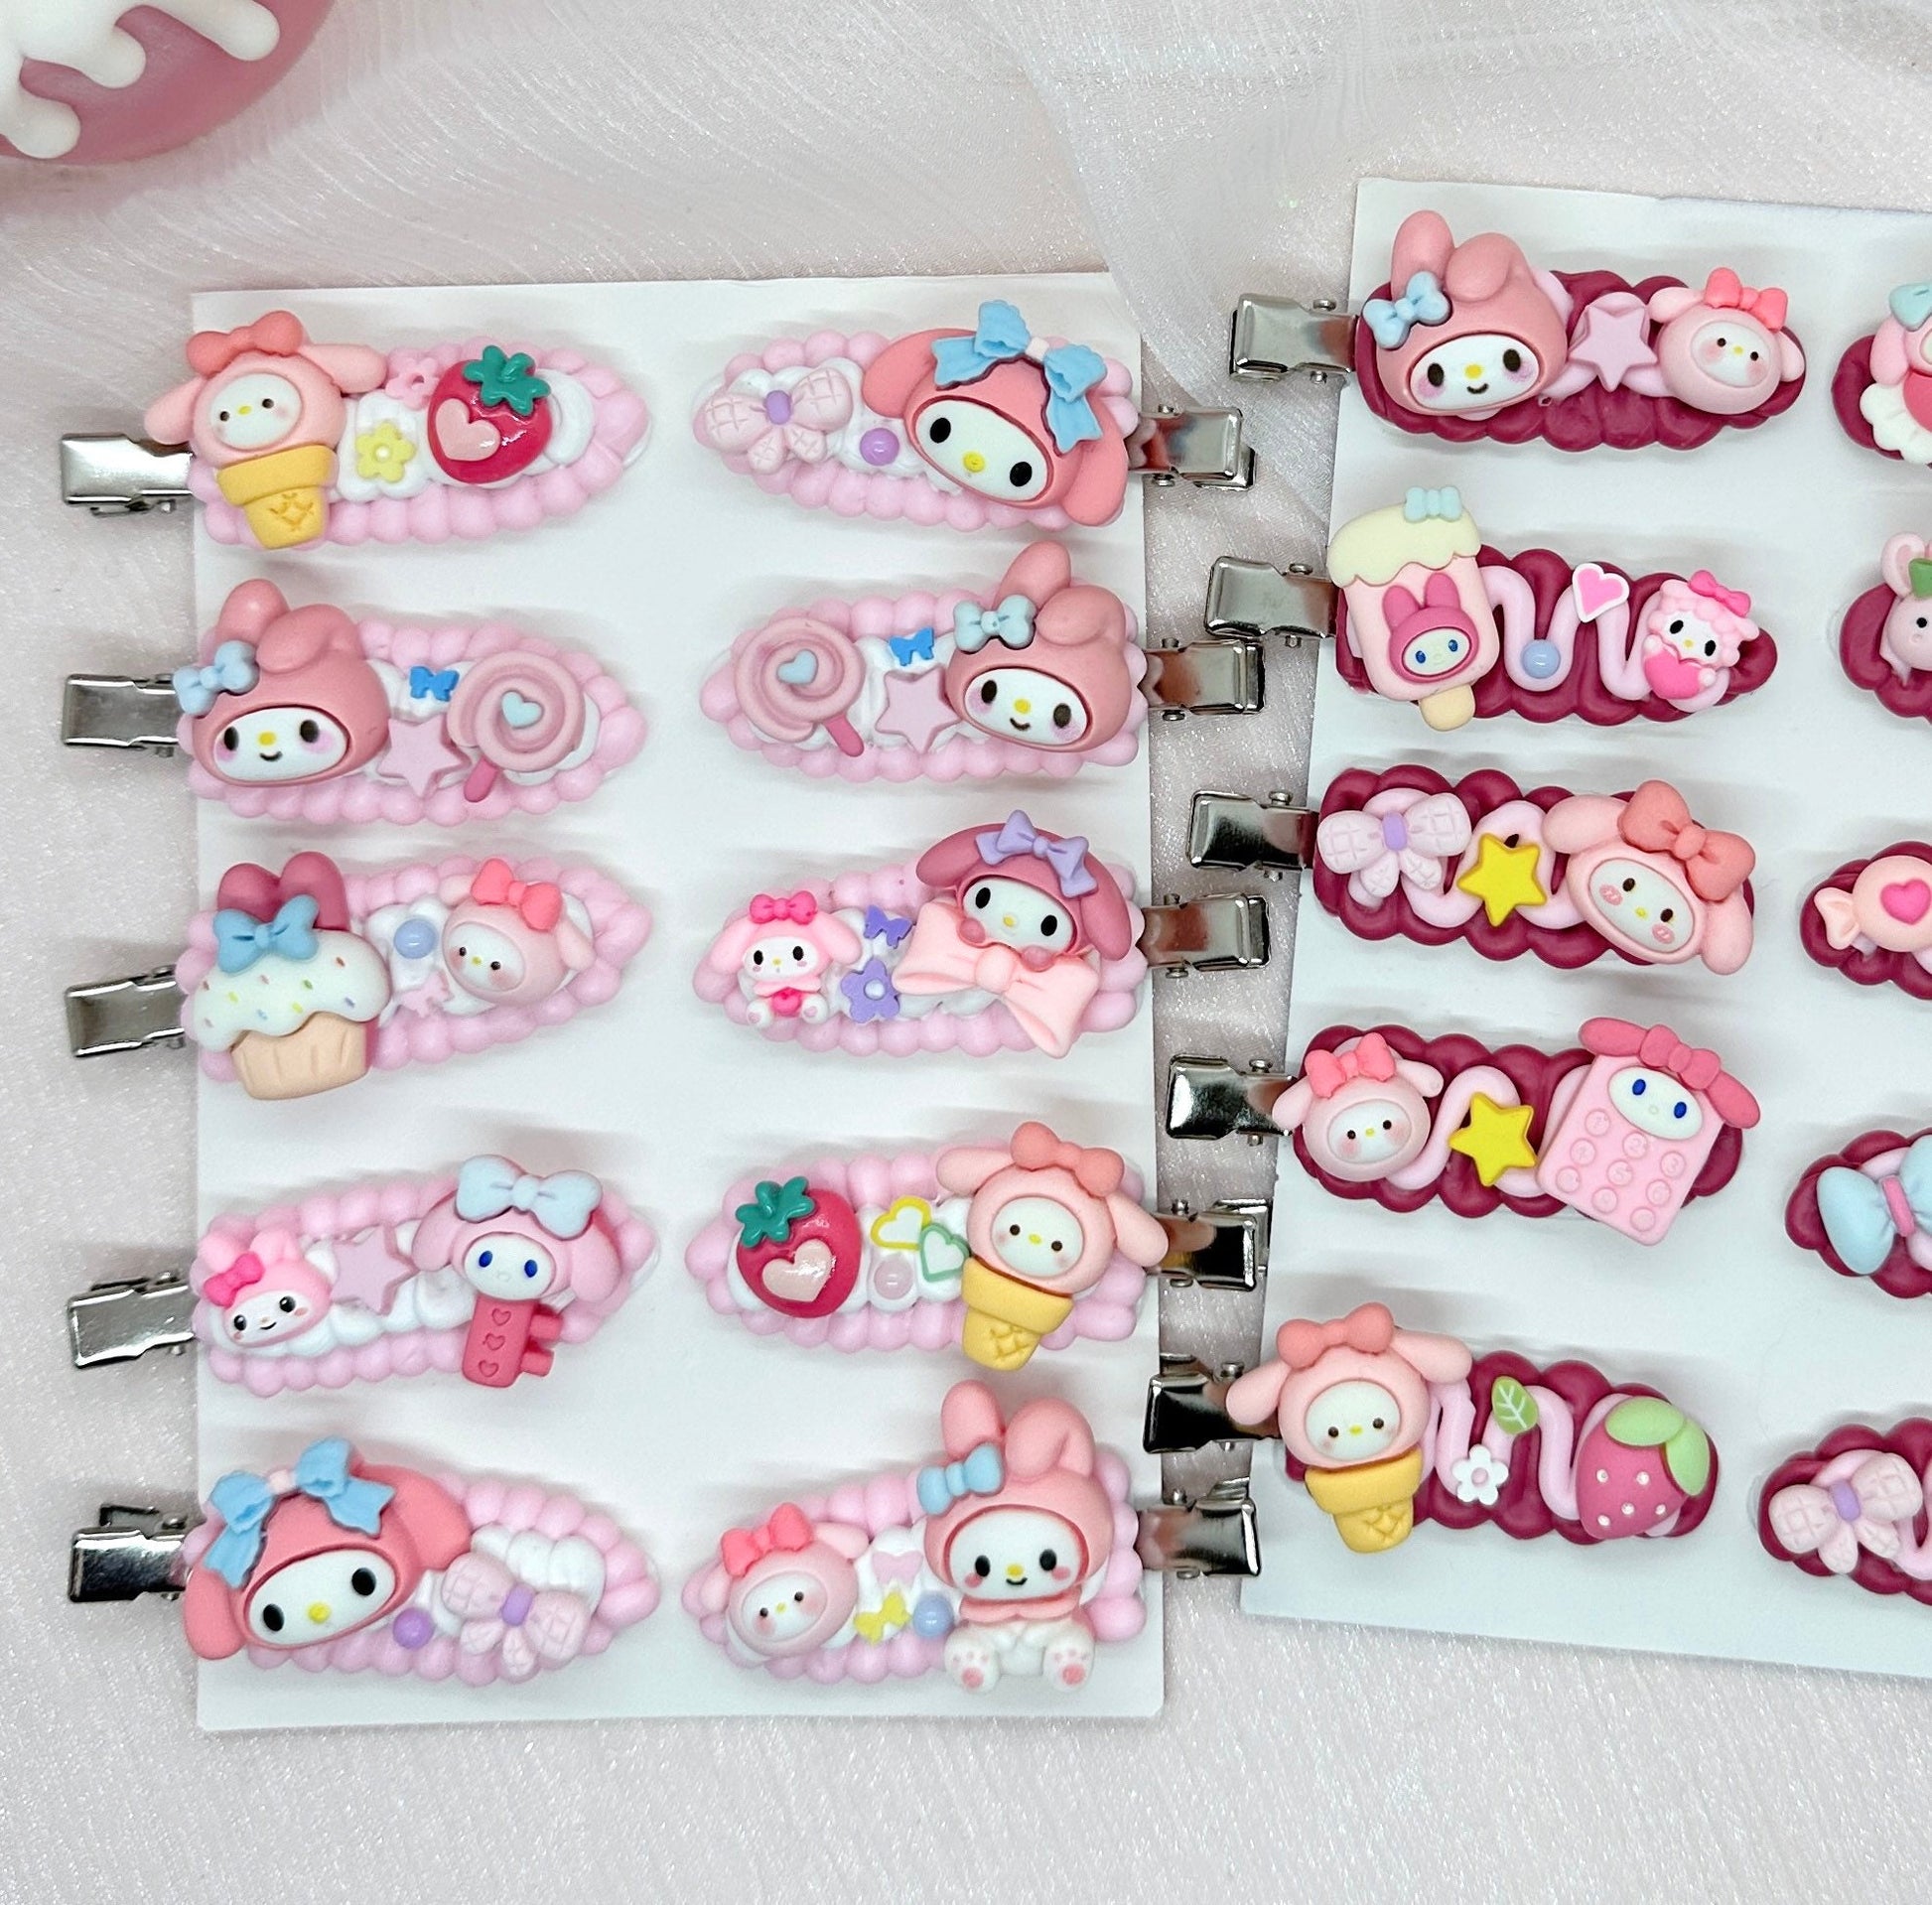 Kawaii My Melody hair clips, Handmade Sanrio Barrette, Cute Pink Hair Clips, Random 1, cute decoden hair accessories, each one is unique